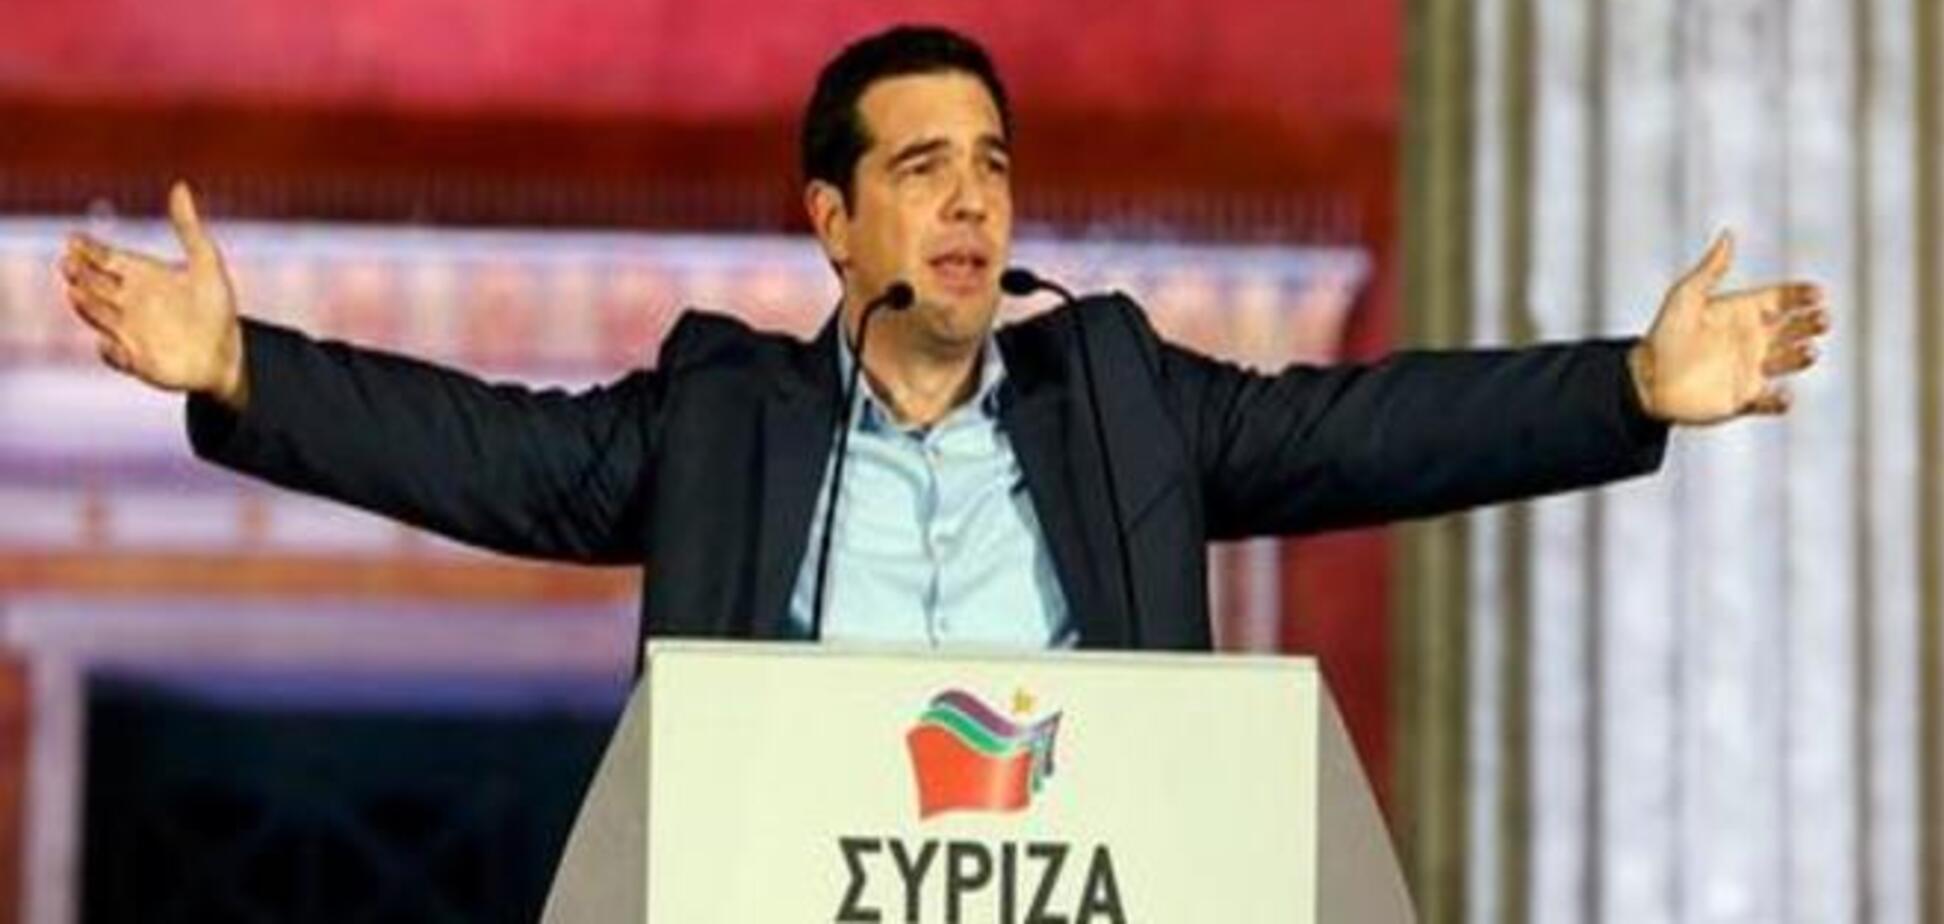 Действия греческого правительства удивляют и возмущают немцев